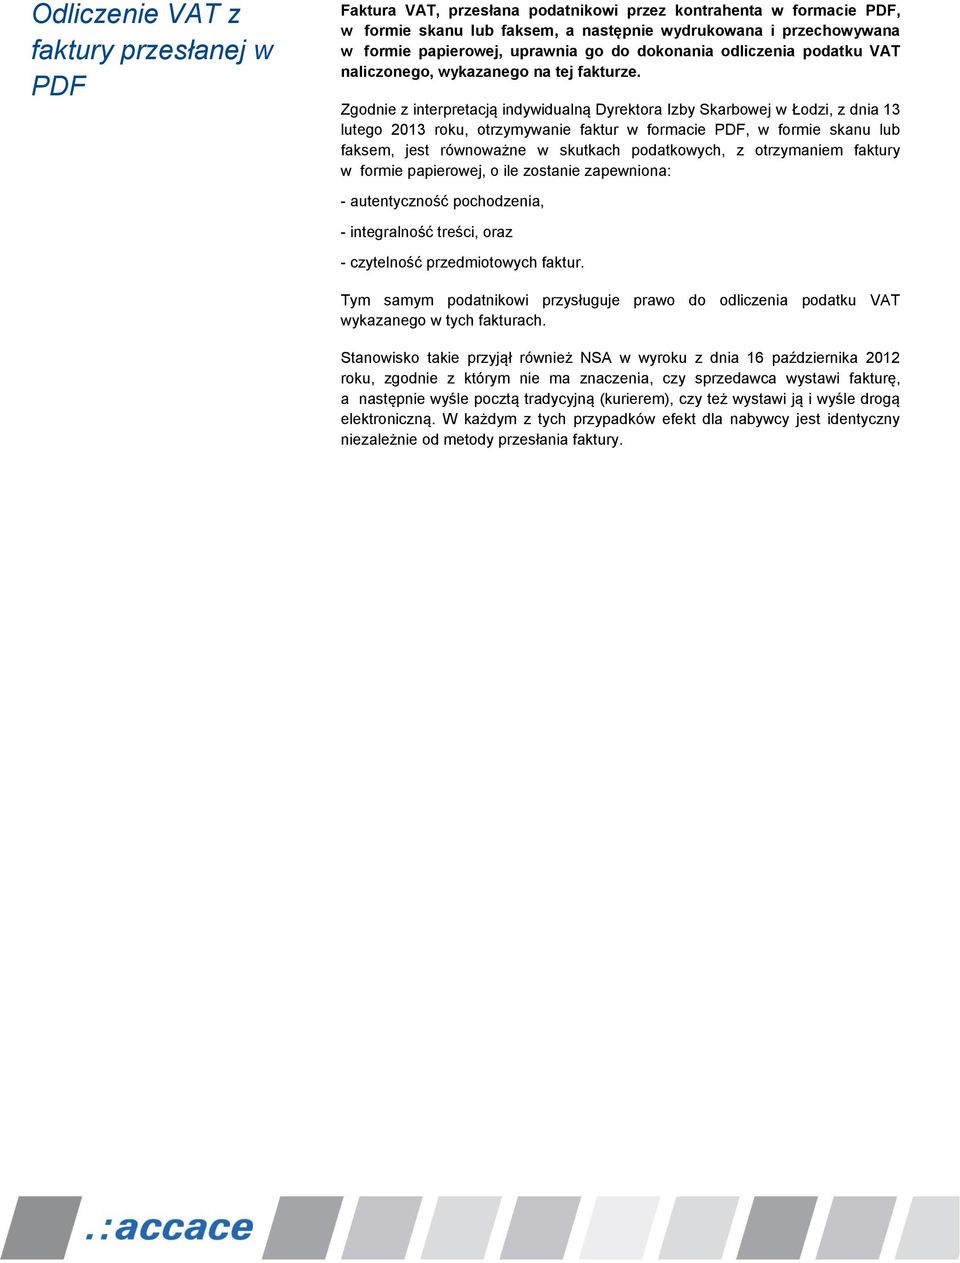 Zgodnie z interpretacją indywidualną Dyrektora Izby Skarbowej w Łodzi, z dnia 13 lutego 2013 roku, otrzymywanie faktur w formacie PDF, w formie skanu lub faksem, jest równoważne w skutkach